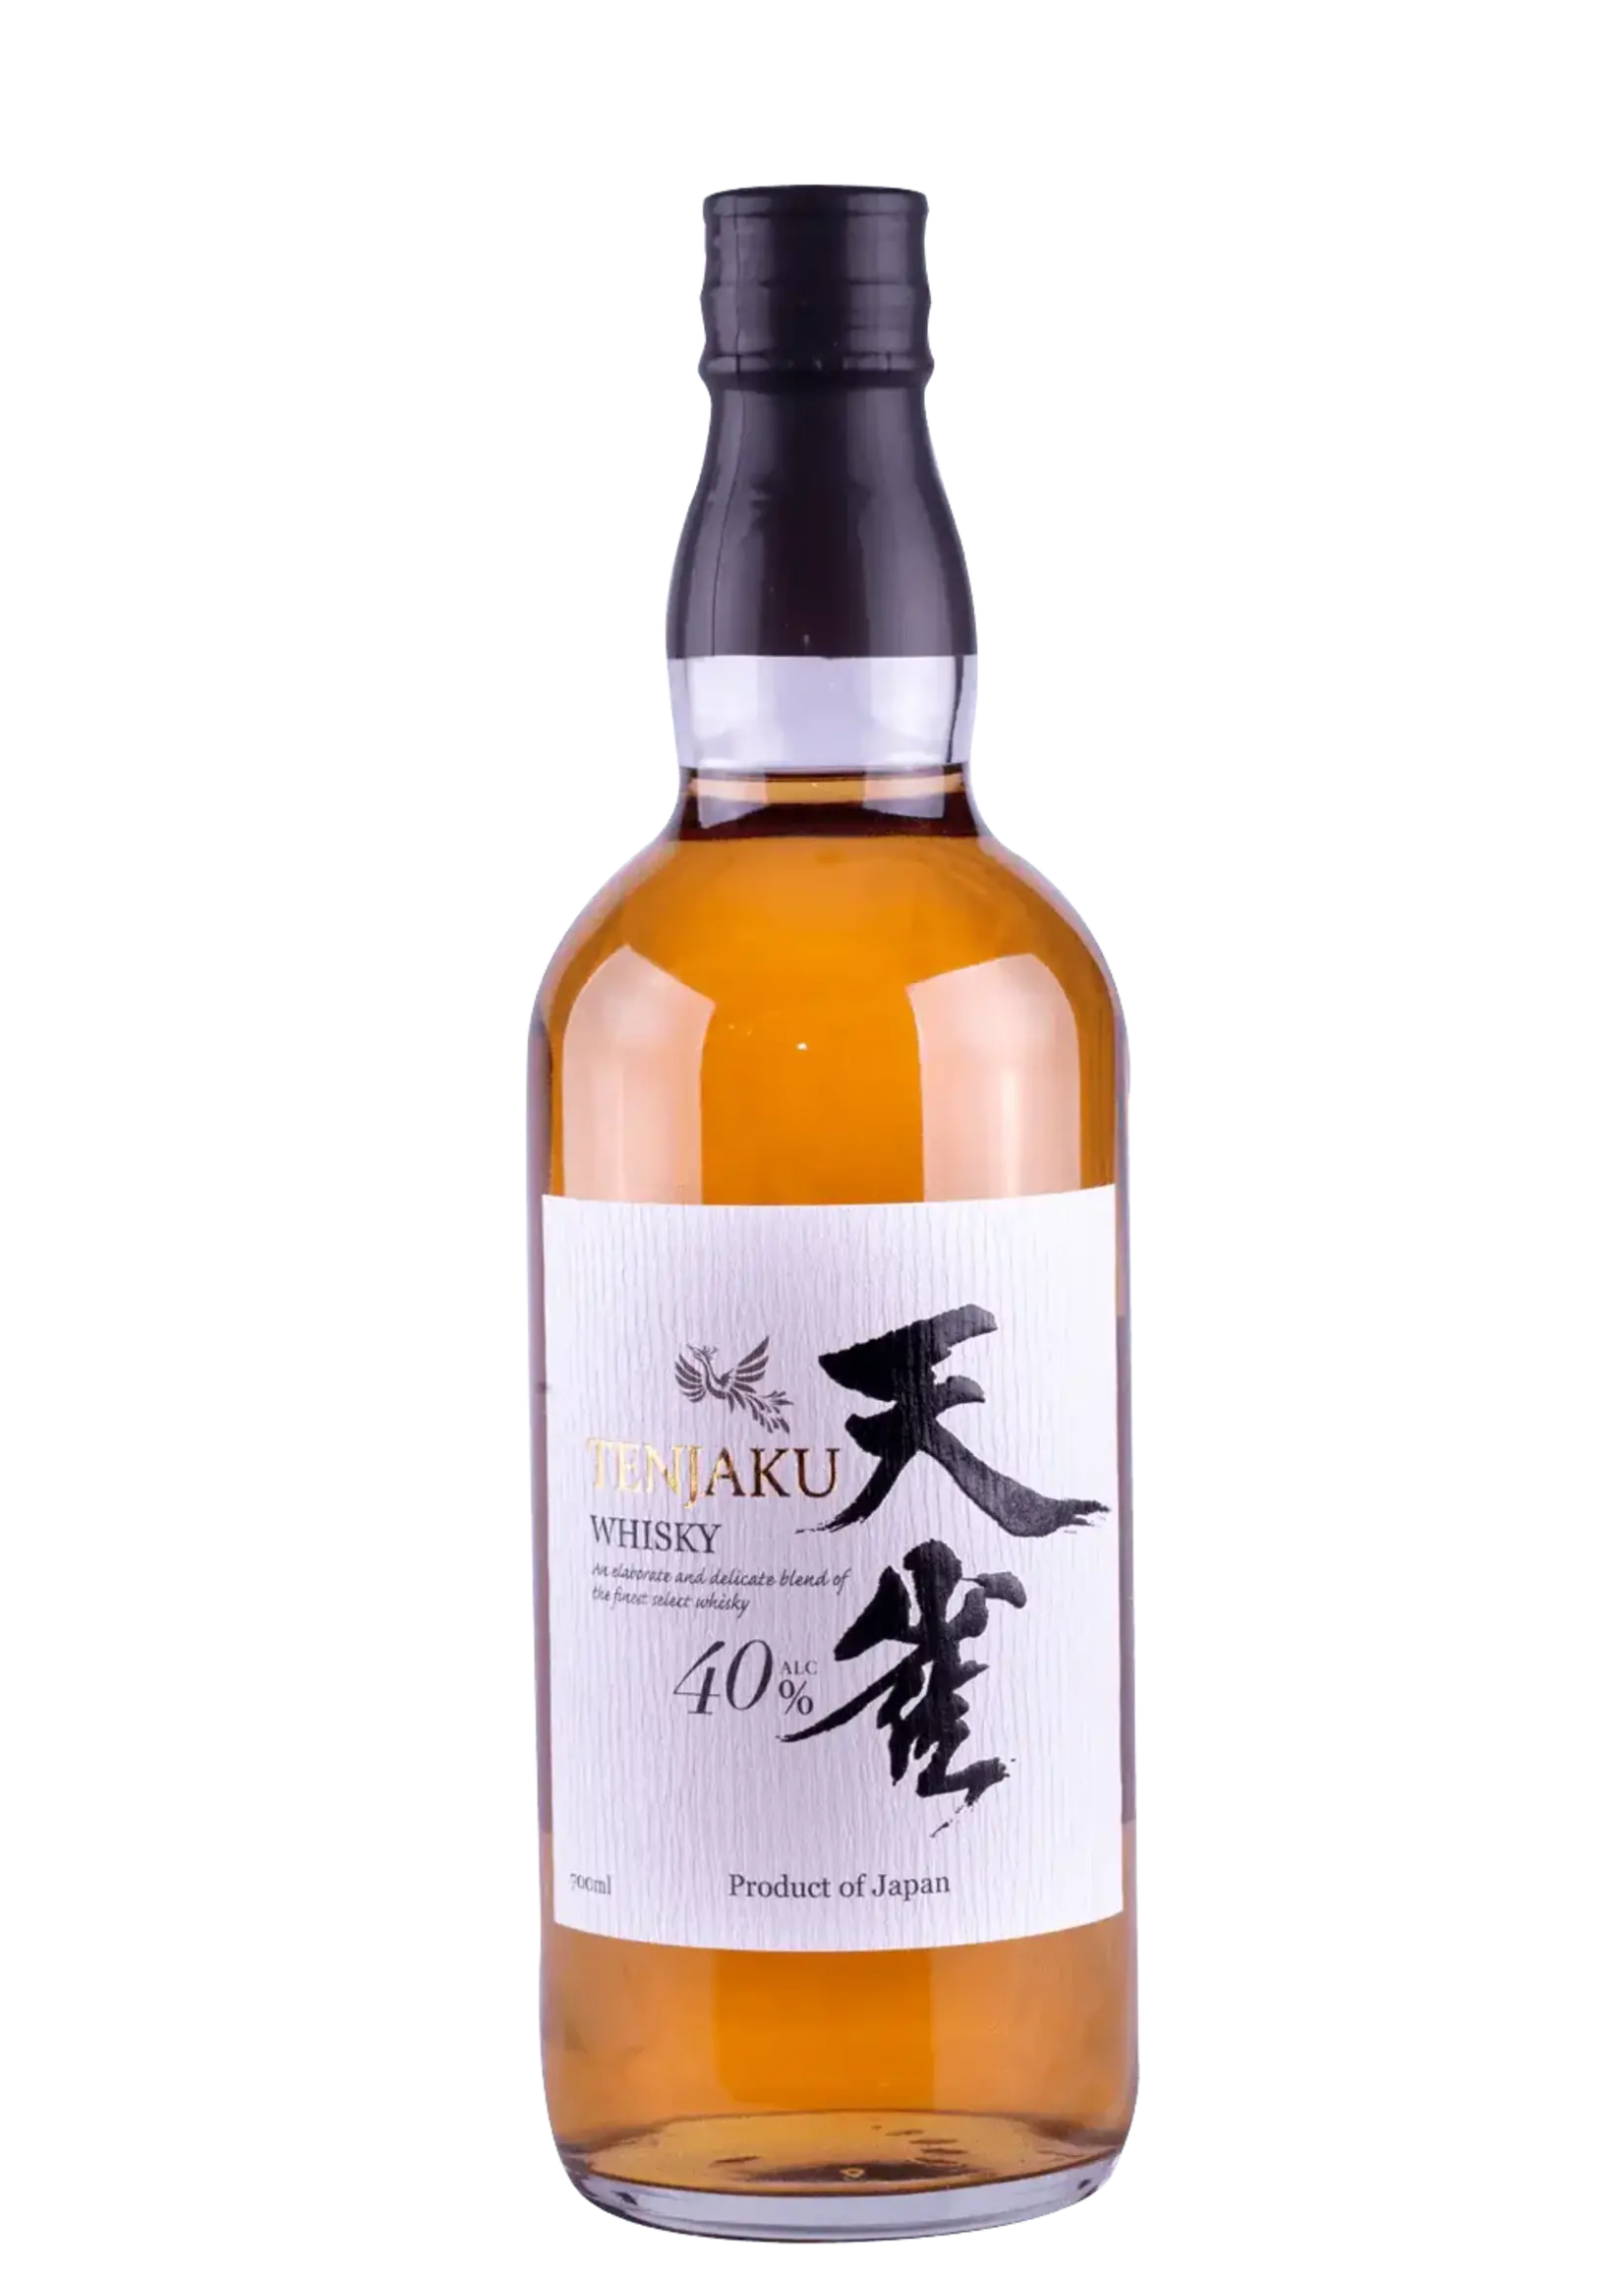 Tenjaku Tenjaku / Blended Japanese Whisky 40% / 750mL